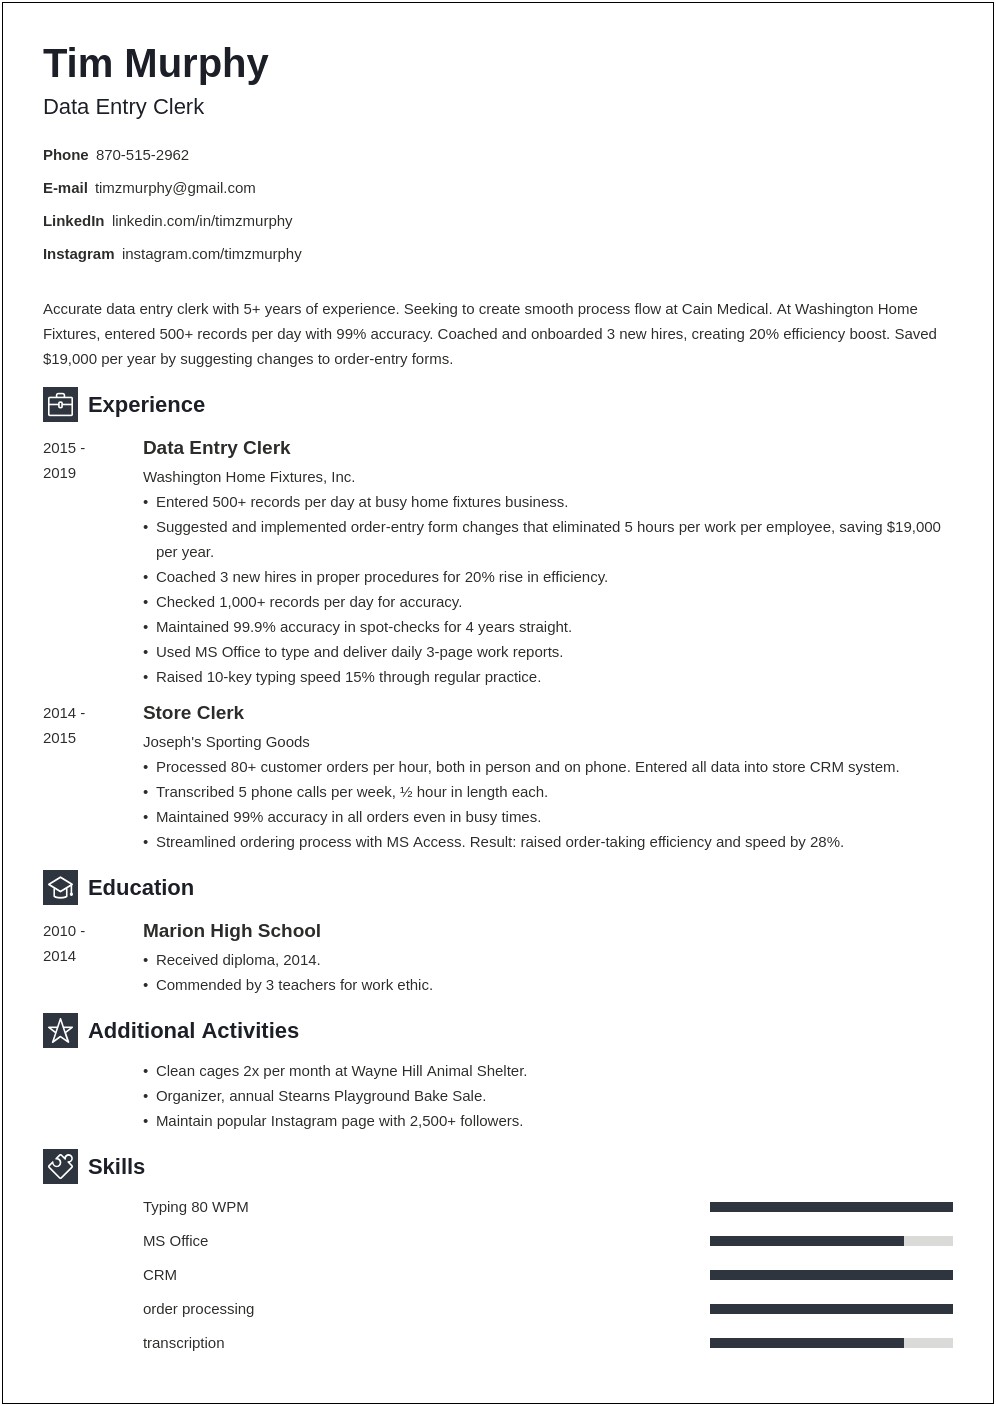 Data Entry Job Descriptions For Resume